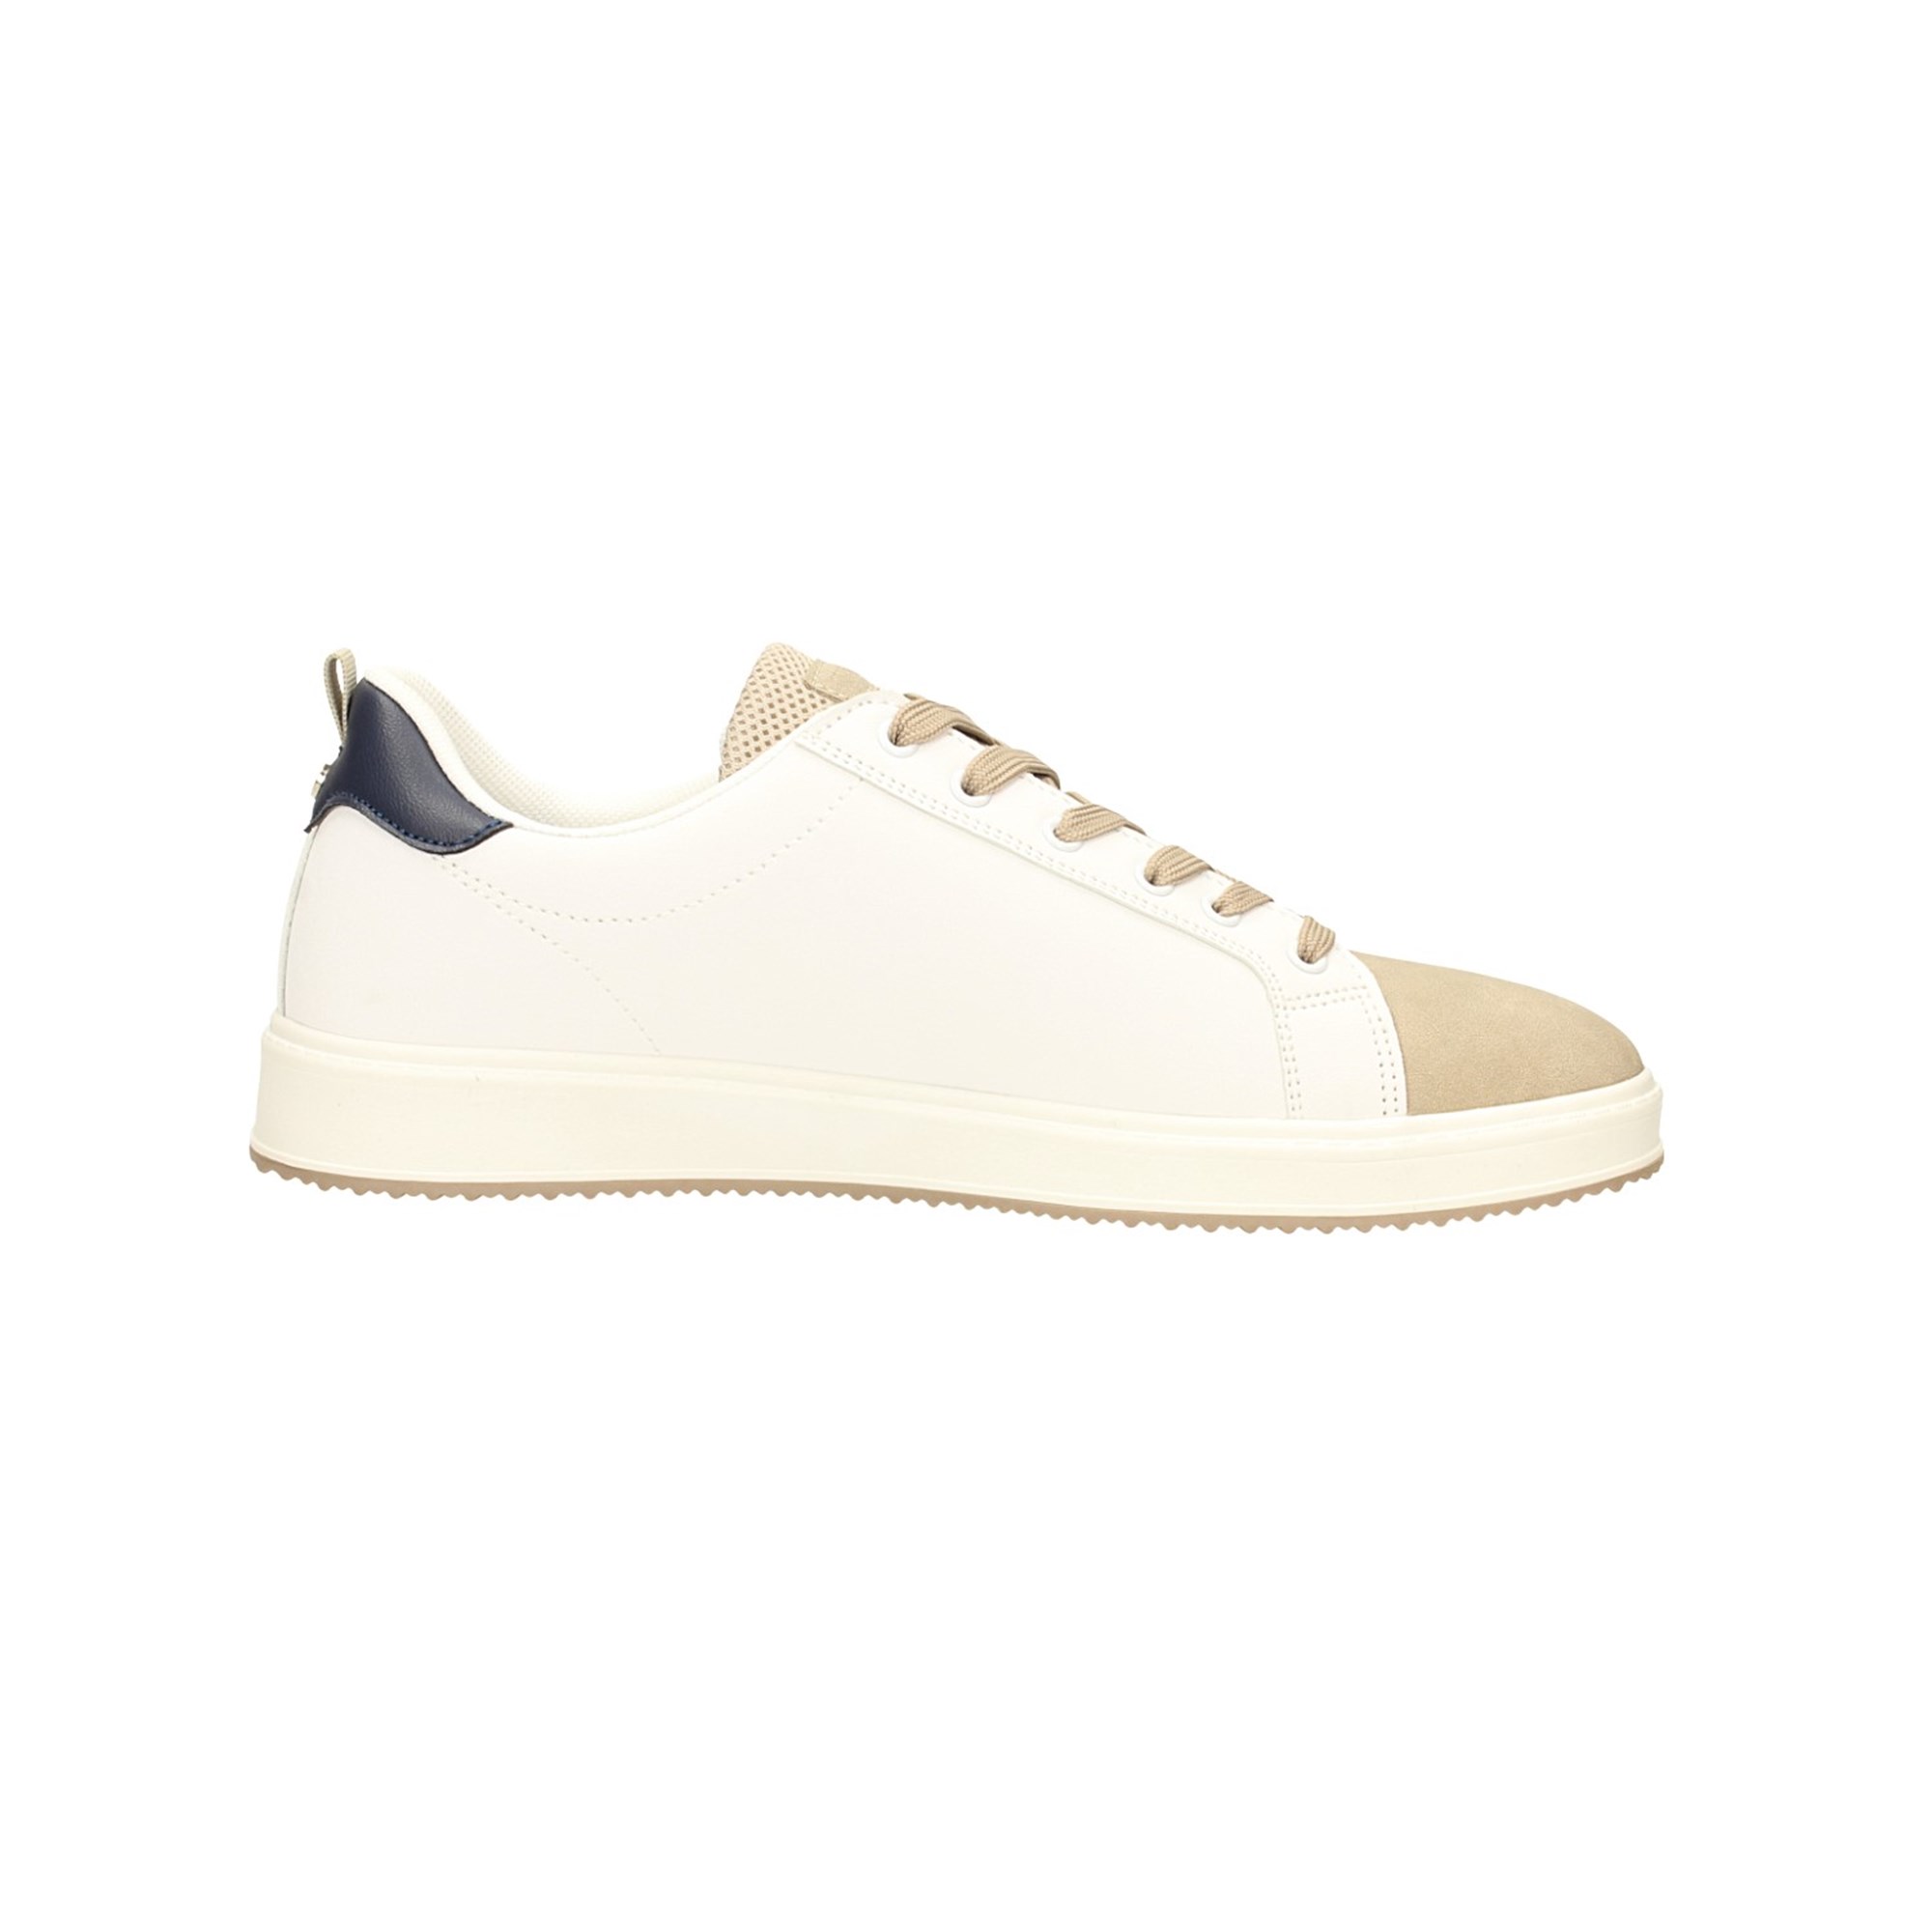 Negozio Online Sneakers bianche con inserti beige e dettaglio blu sul tallone